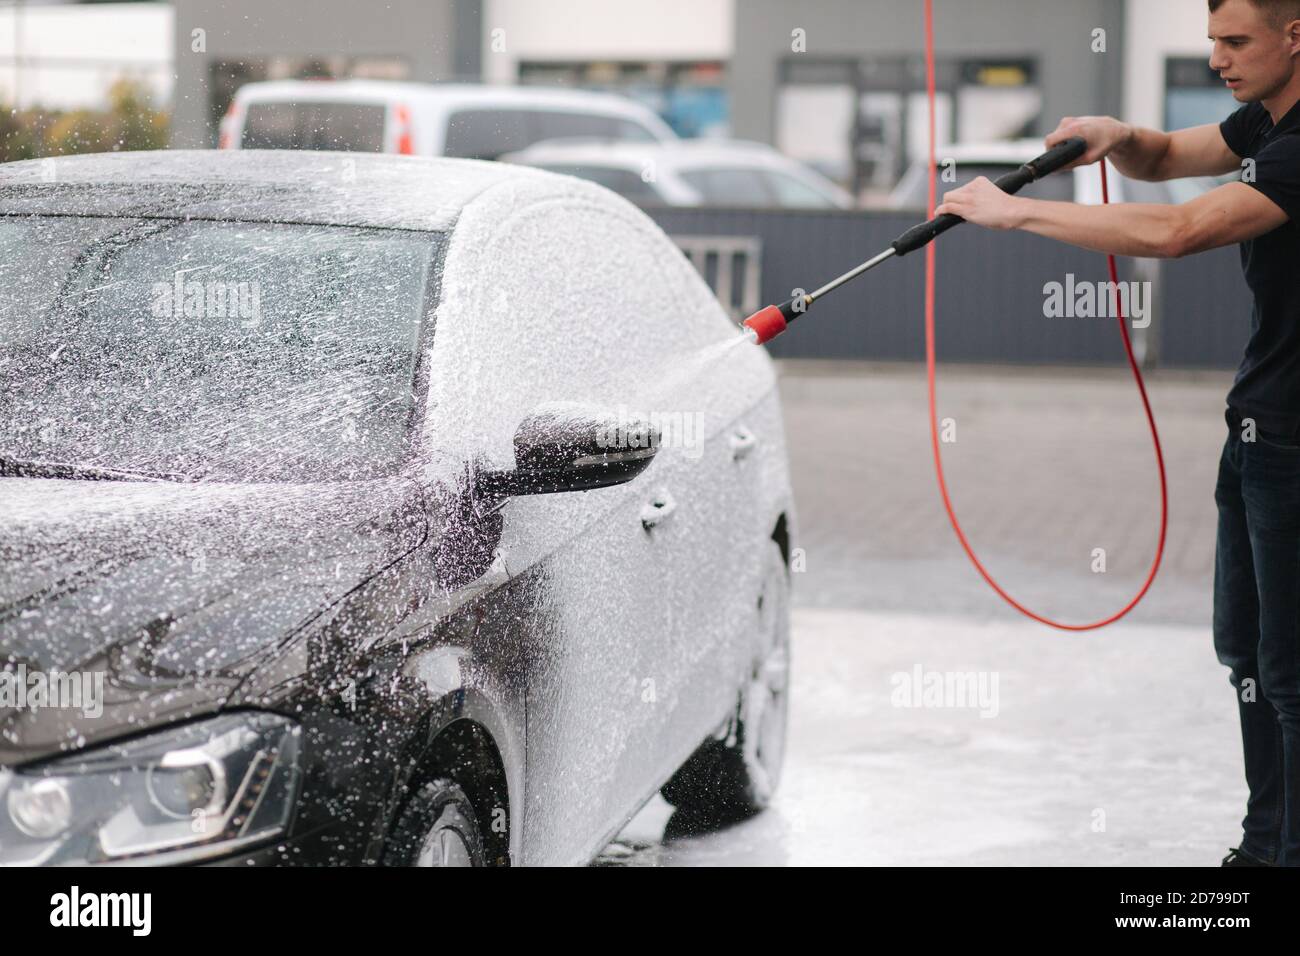 https://c8.alamy.com/compes/2d799dt/limpieza-del-coche-con-espuma-activa-hombre-lavando-su-coche-en-auto-lavado-de-coches-2d799dt.jpg